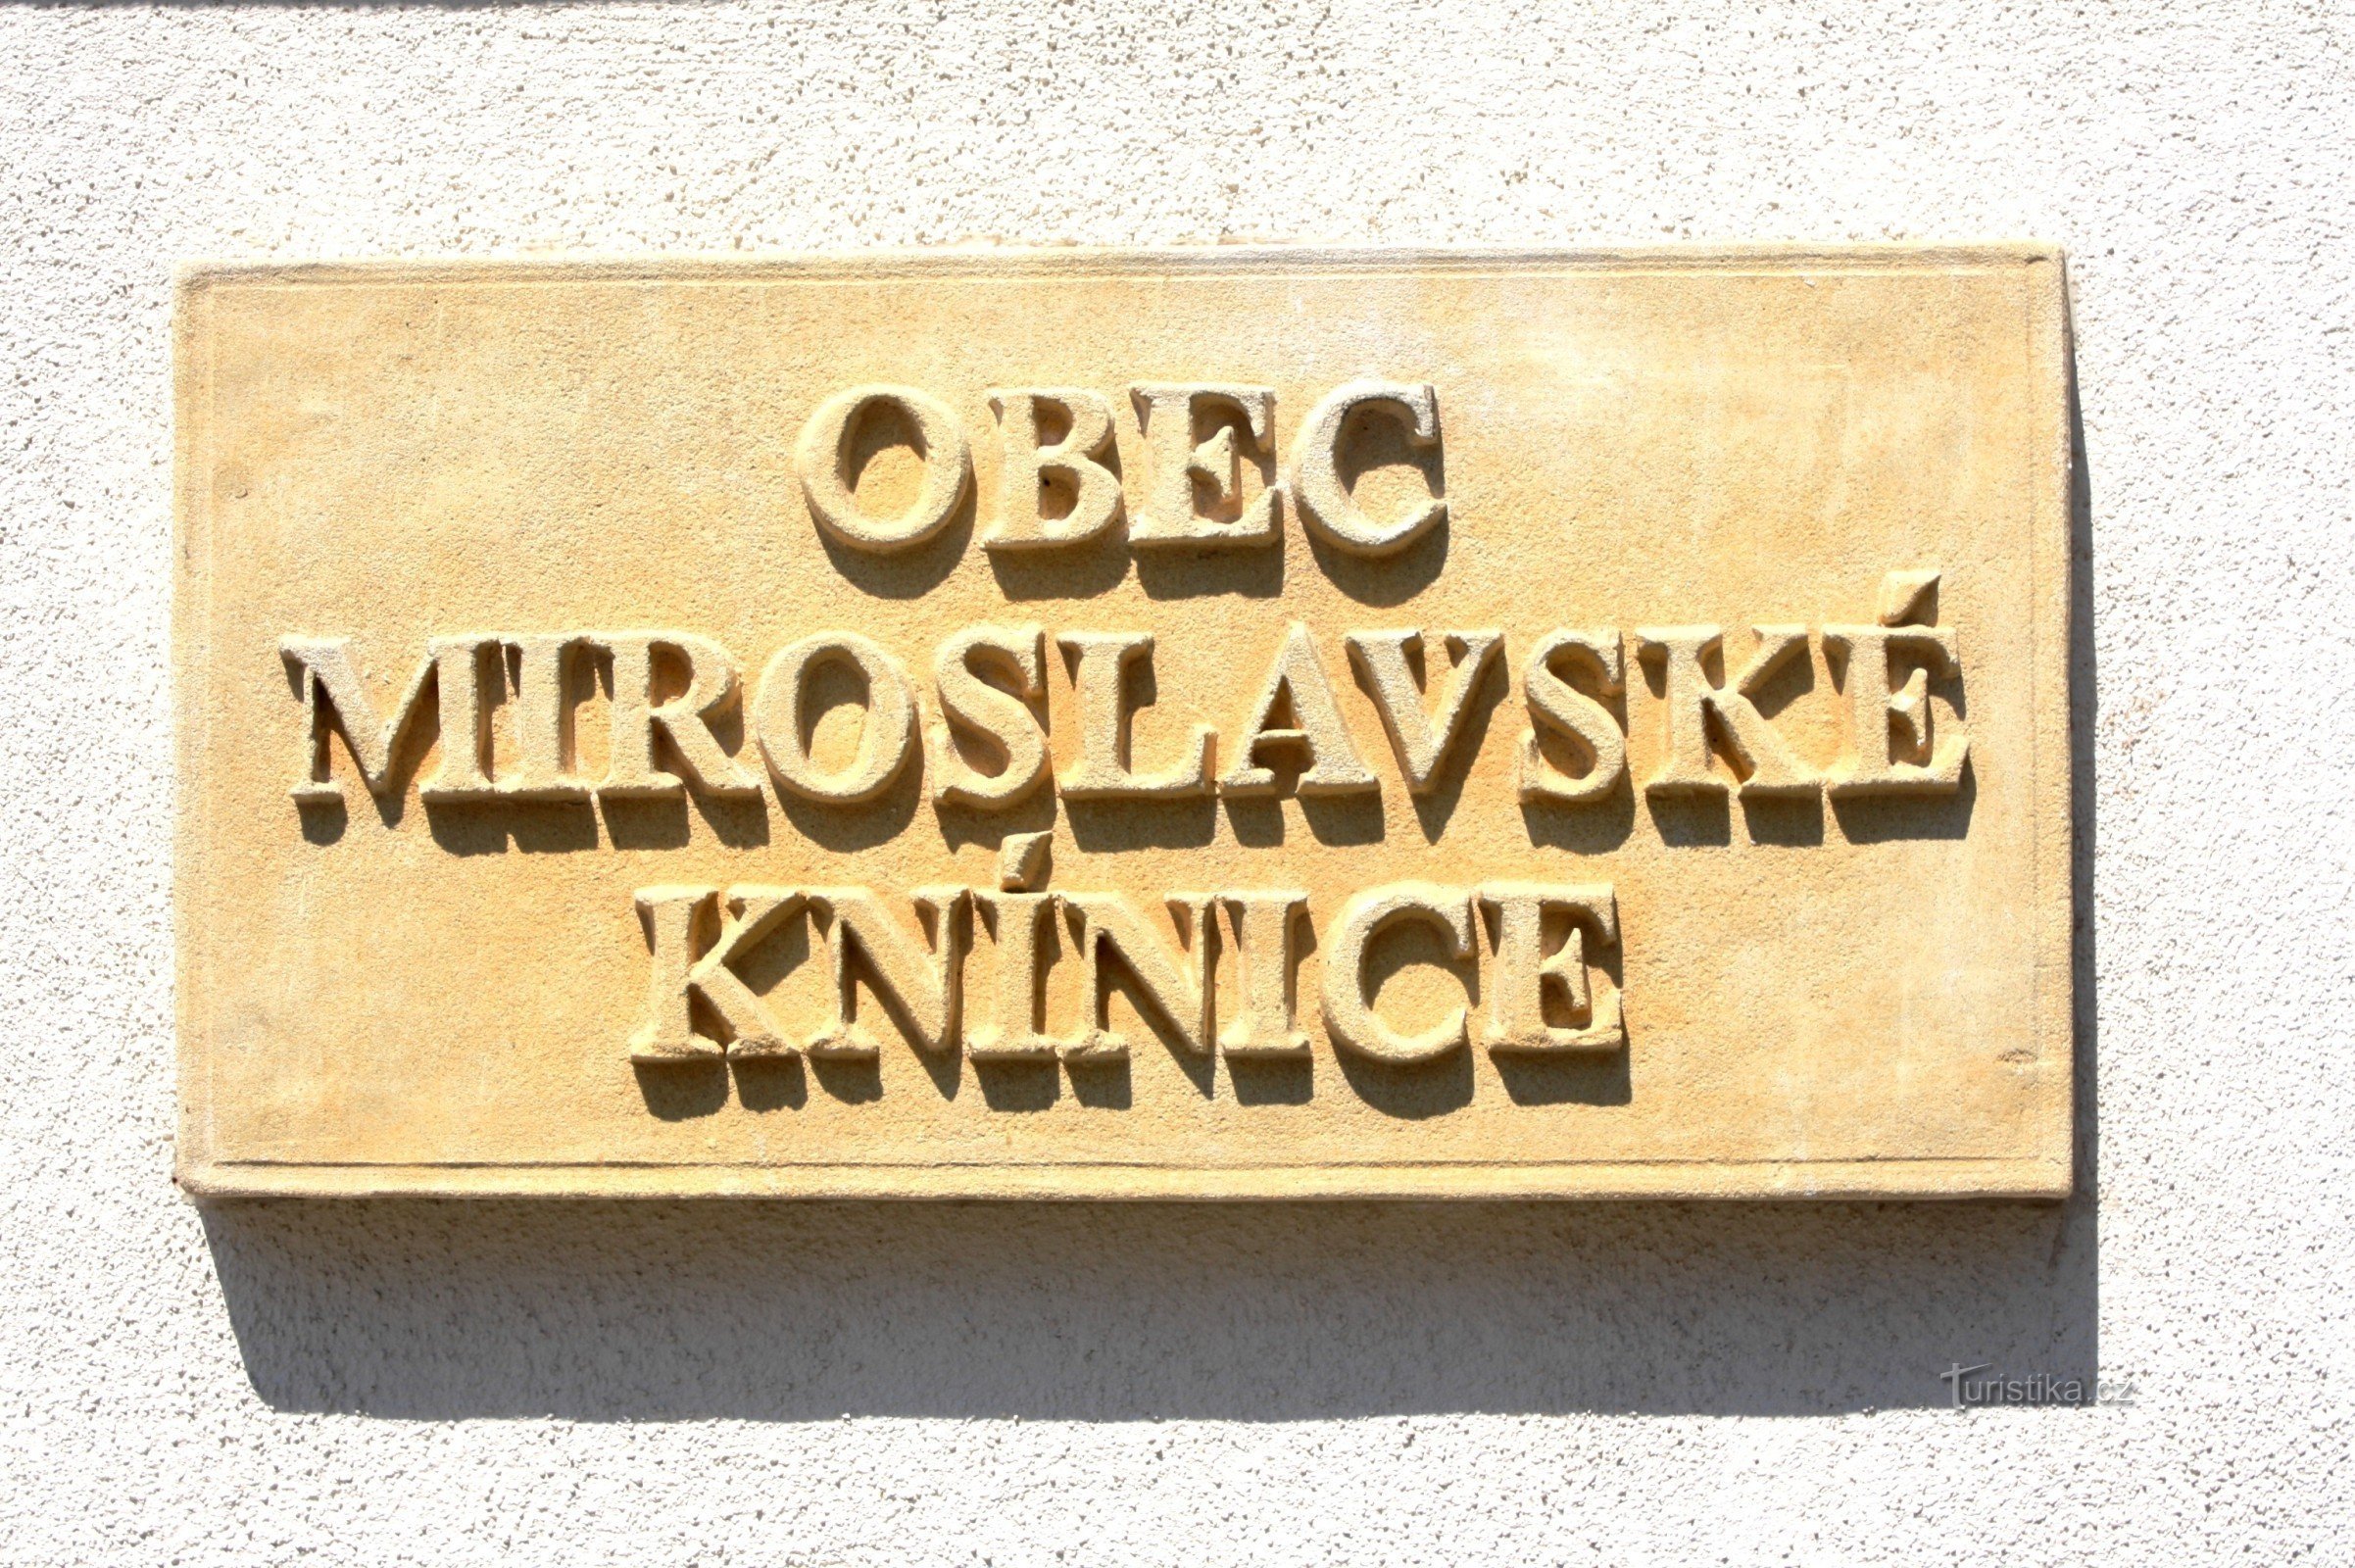 Miroslavské Knínice - dwalen door de bezienswaardigheden van het dorp